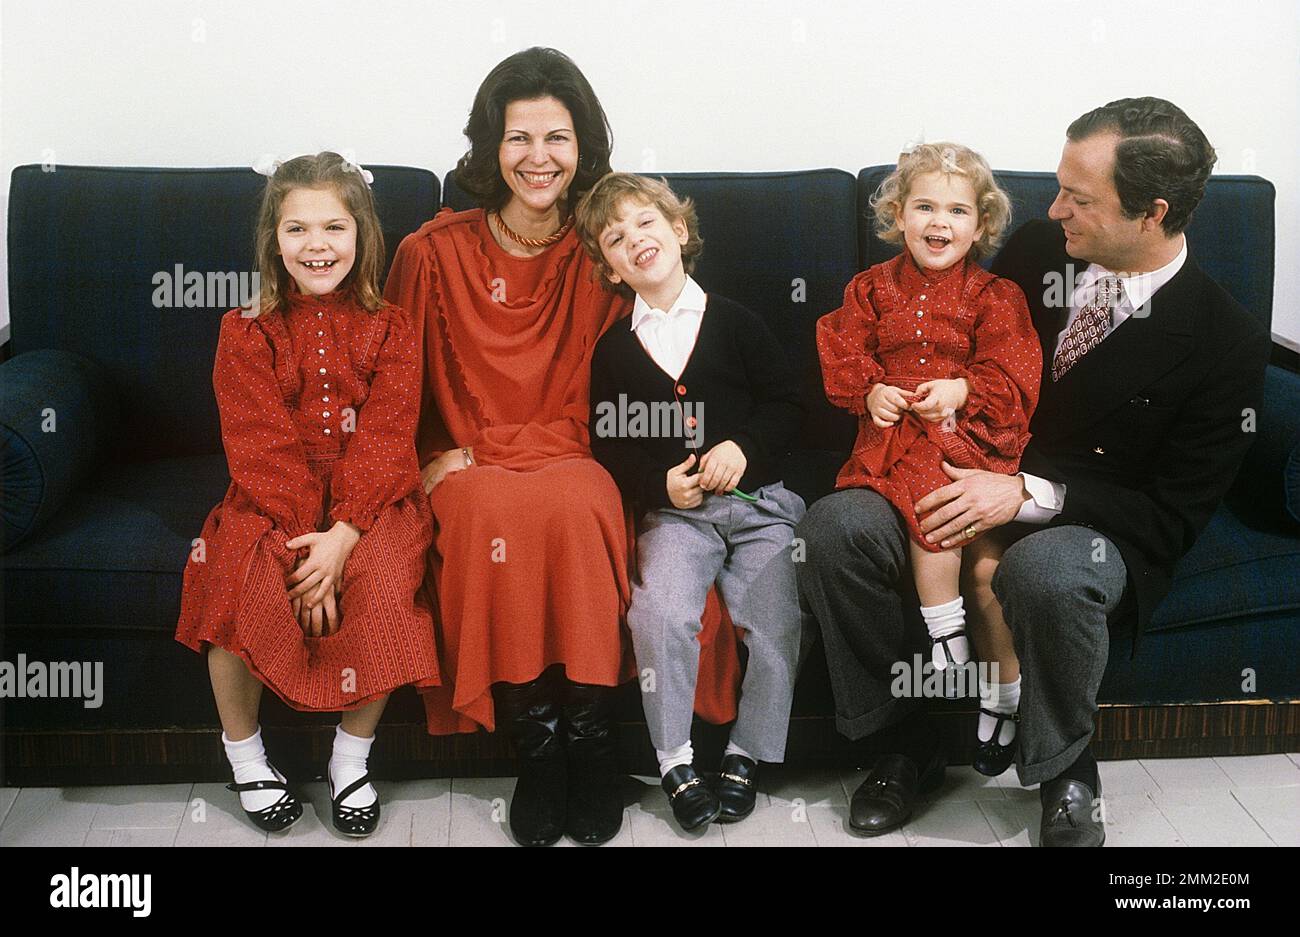 Carl XVI Gustaf, re di Svezia. Nato il 30 aprile 1946. Il re Carlo XVI Gustaf, la regina Silvia i loro figli, la principessa Madeleine, la principessa corona Victoria, il principe Carl Philip, durante l'annuale sessione fotografica di natale. Foto Stock